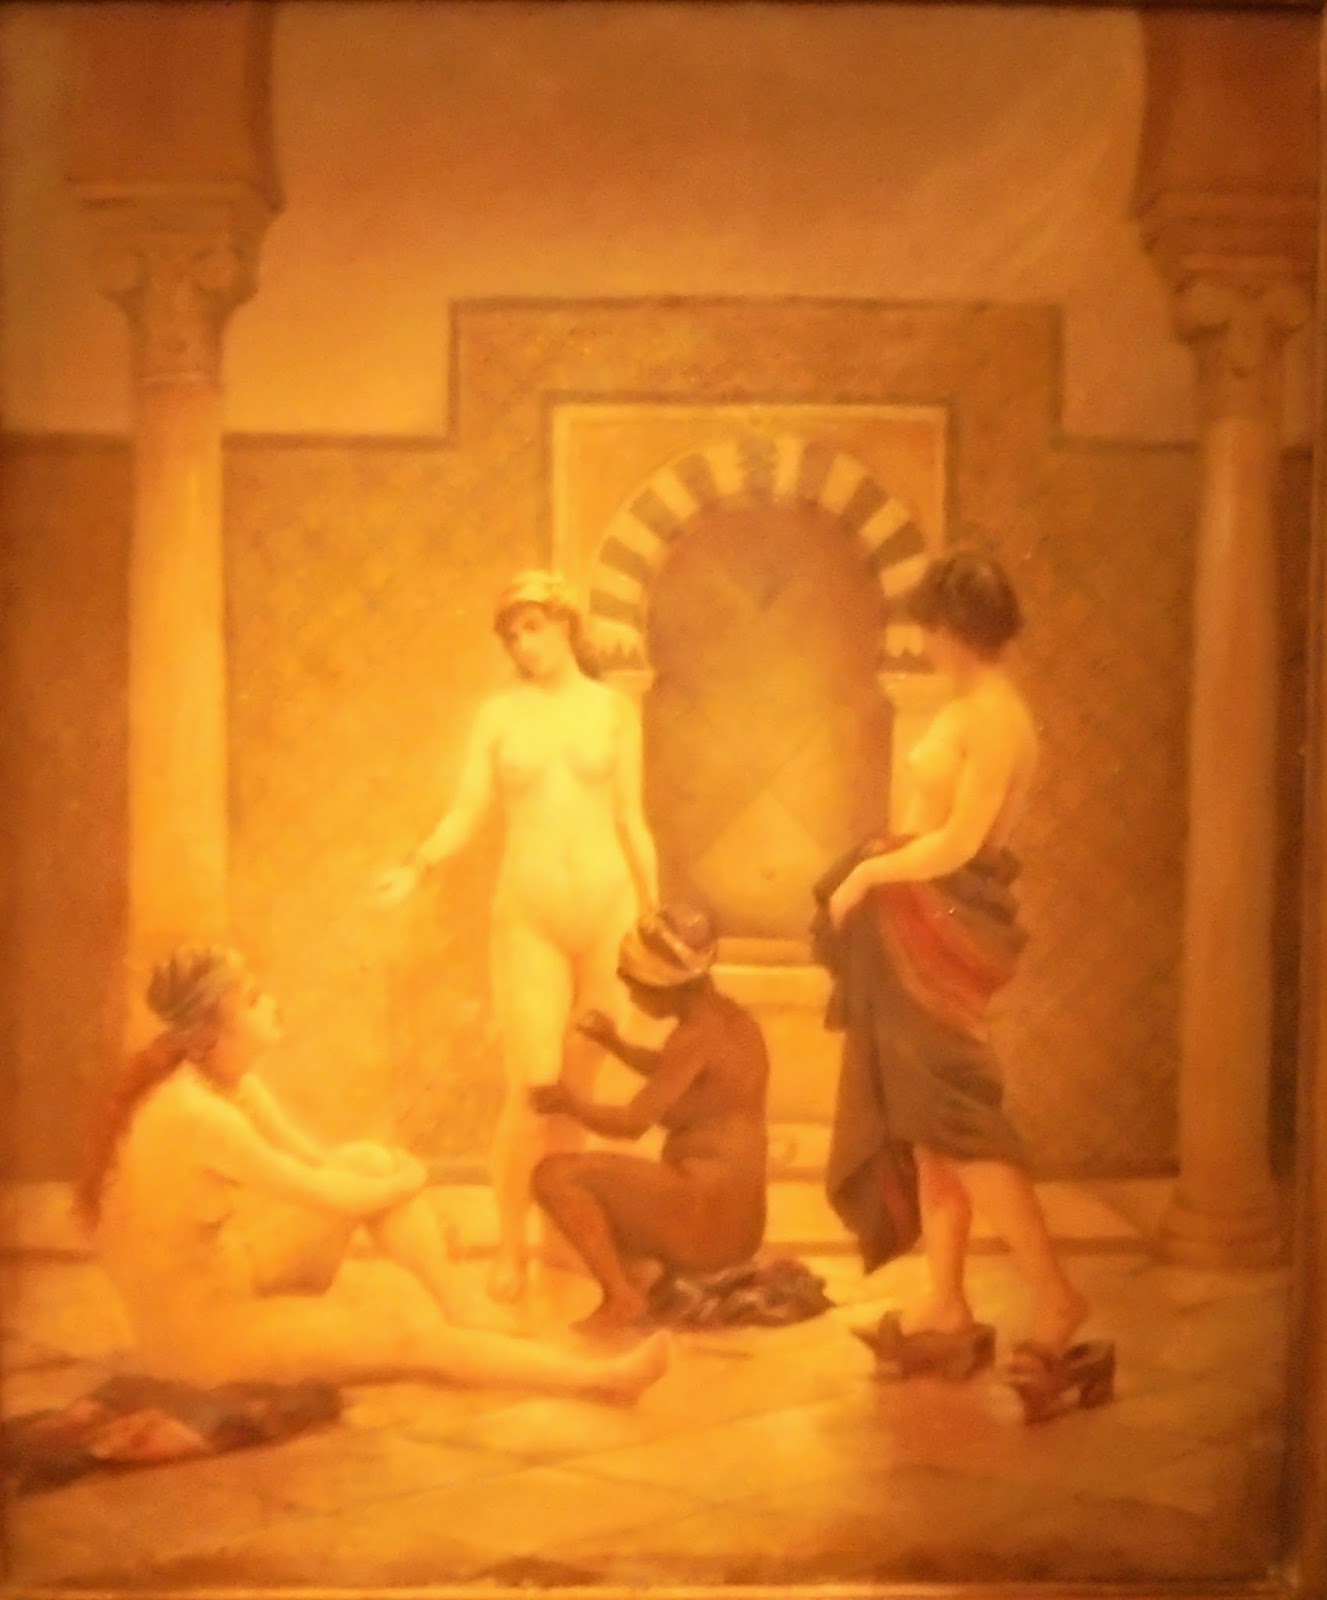 το έργο Ανατολίτικο Λουτρό του Ράλλη Θεόδωρου  στην Πινακοθήκη Ευάγγελος Αβέρωφ του Μετσόβου